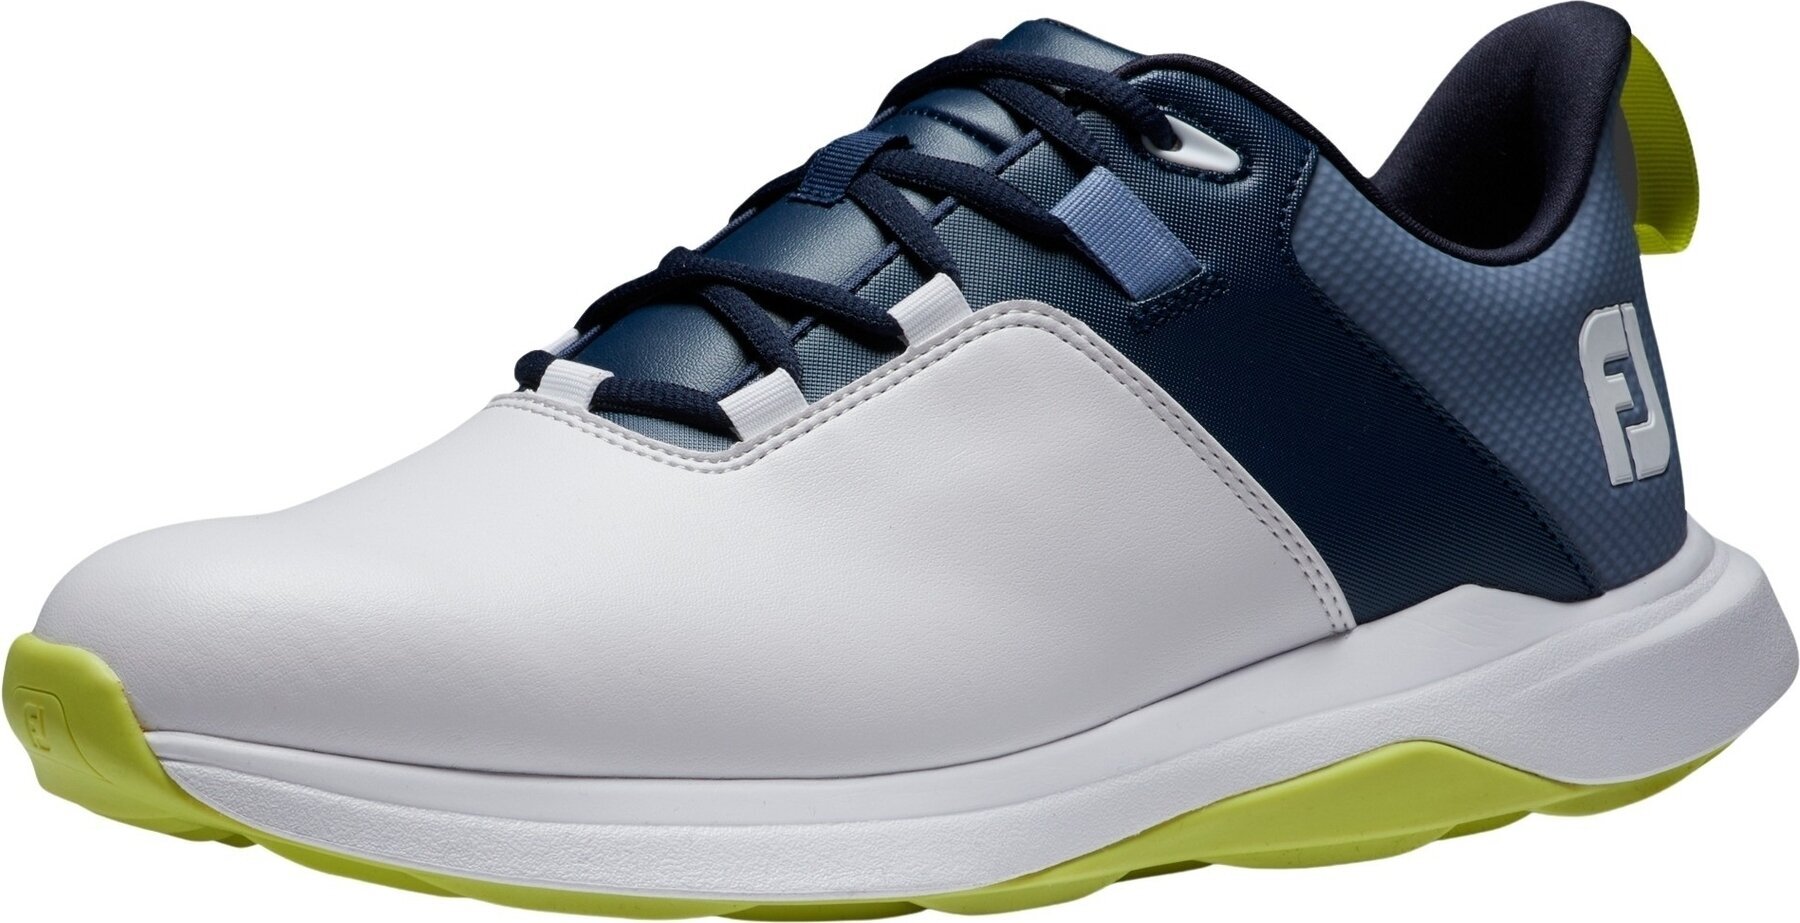 Herren Golfschuhe Footjoy ProLite Mens Golf Shoes White/Navy/Lime 44,5